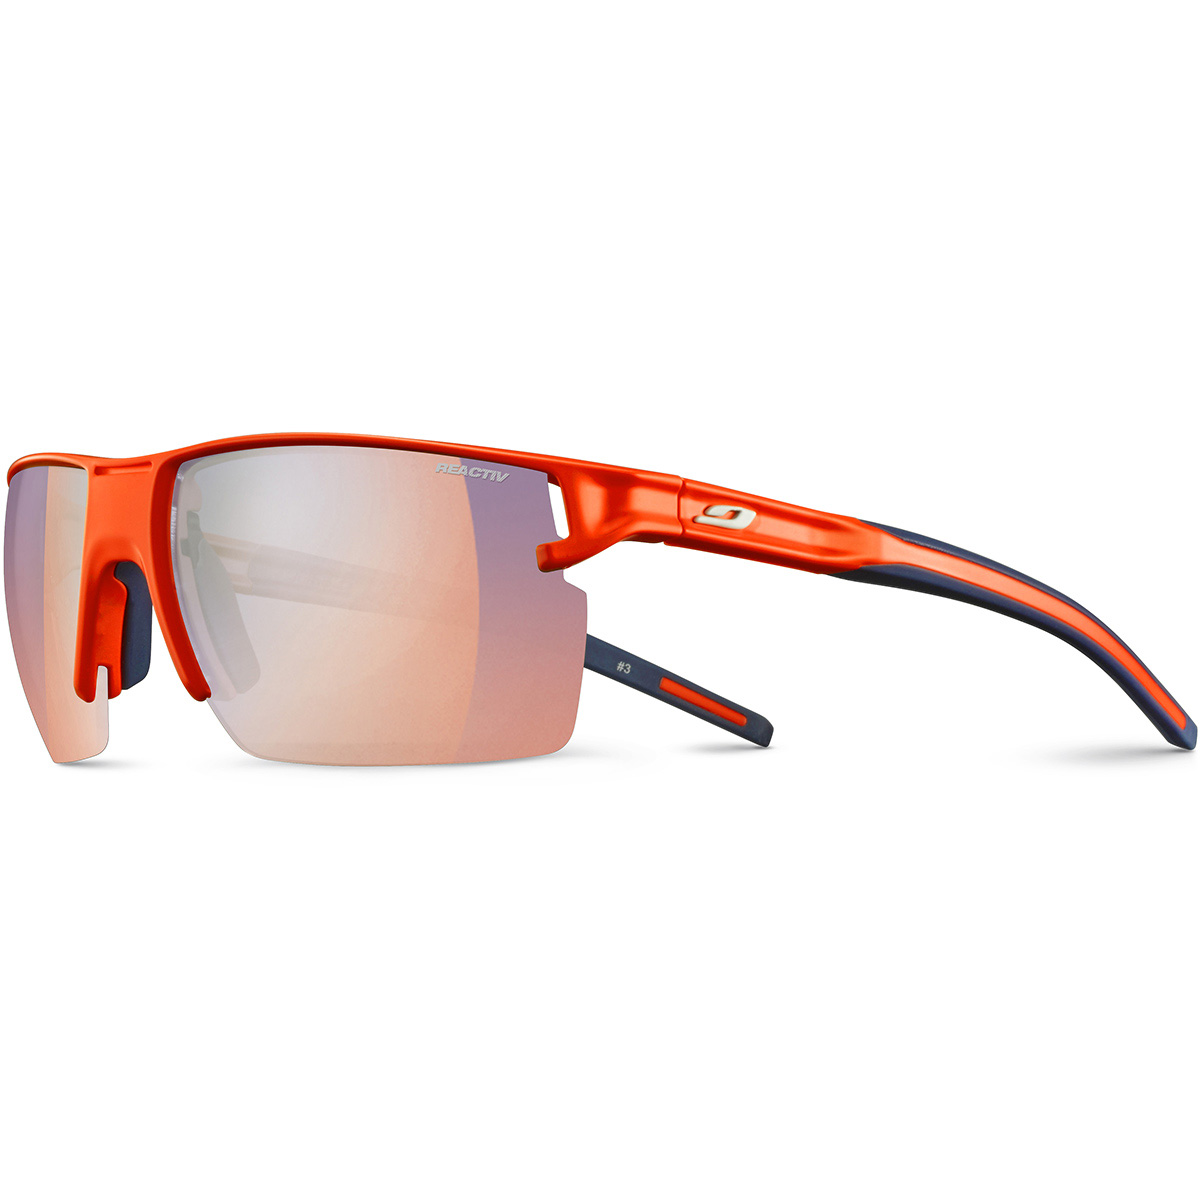 Clip optique pour masque de ski - Lunettes de Sport à la vue/Clips